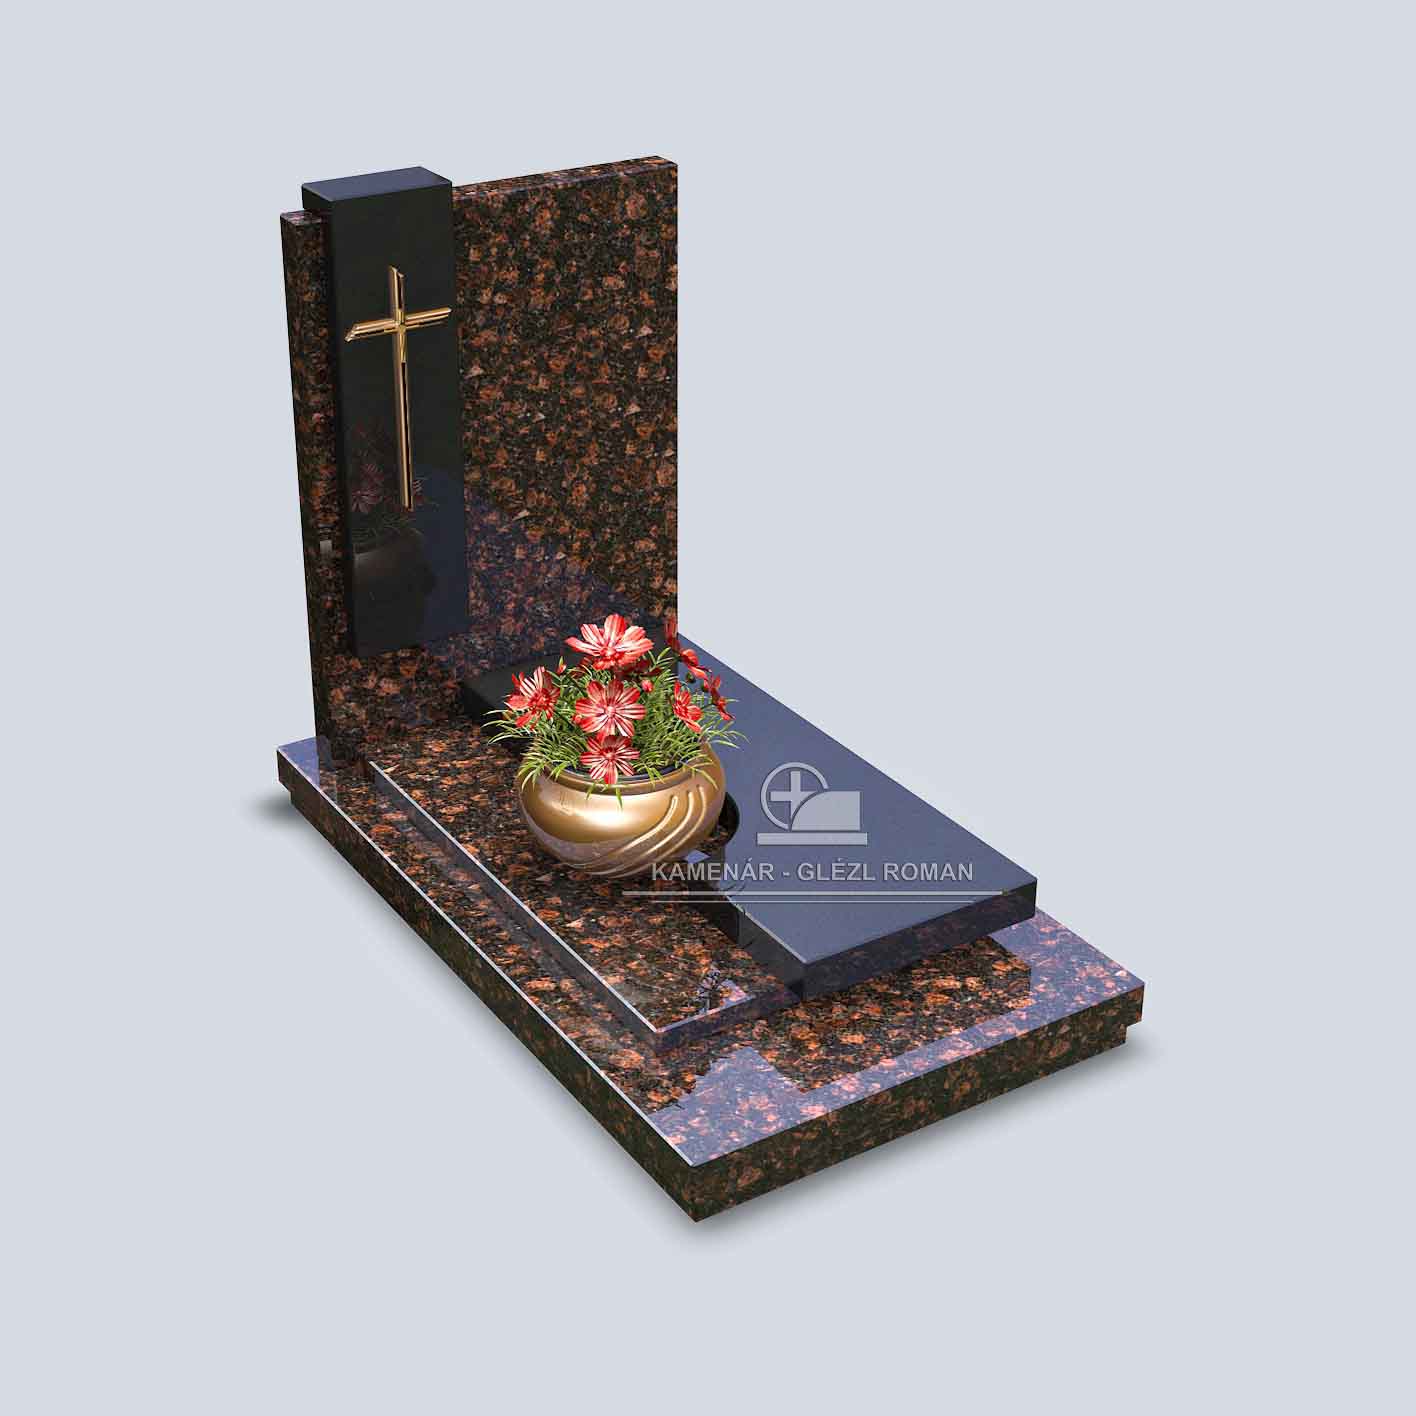 Hnedočierny žulový urnový hrob s bronzovým montovaným krkížom a misou s kvetmi